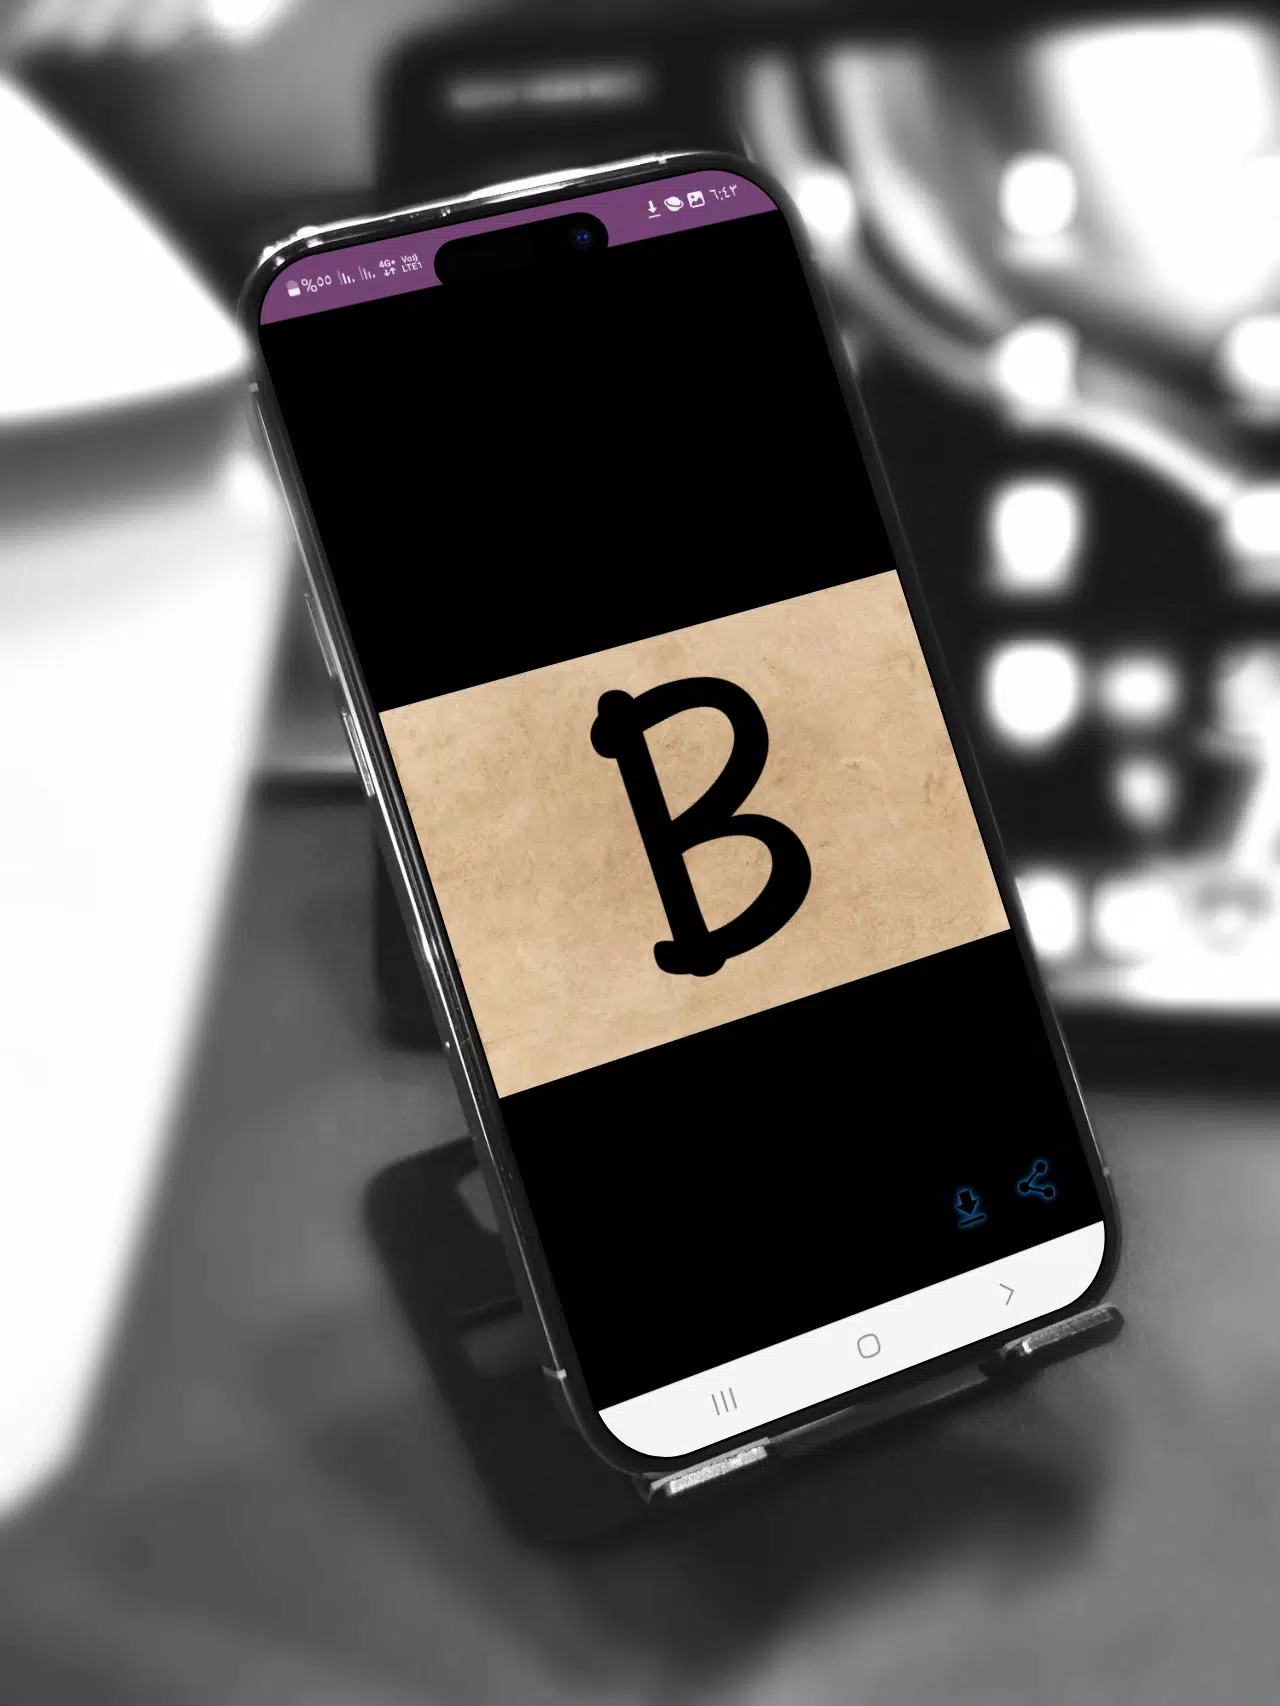 صور حرف B- خلفيات حرف b APK for Android Download